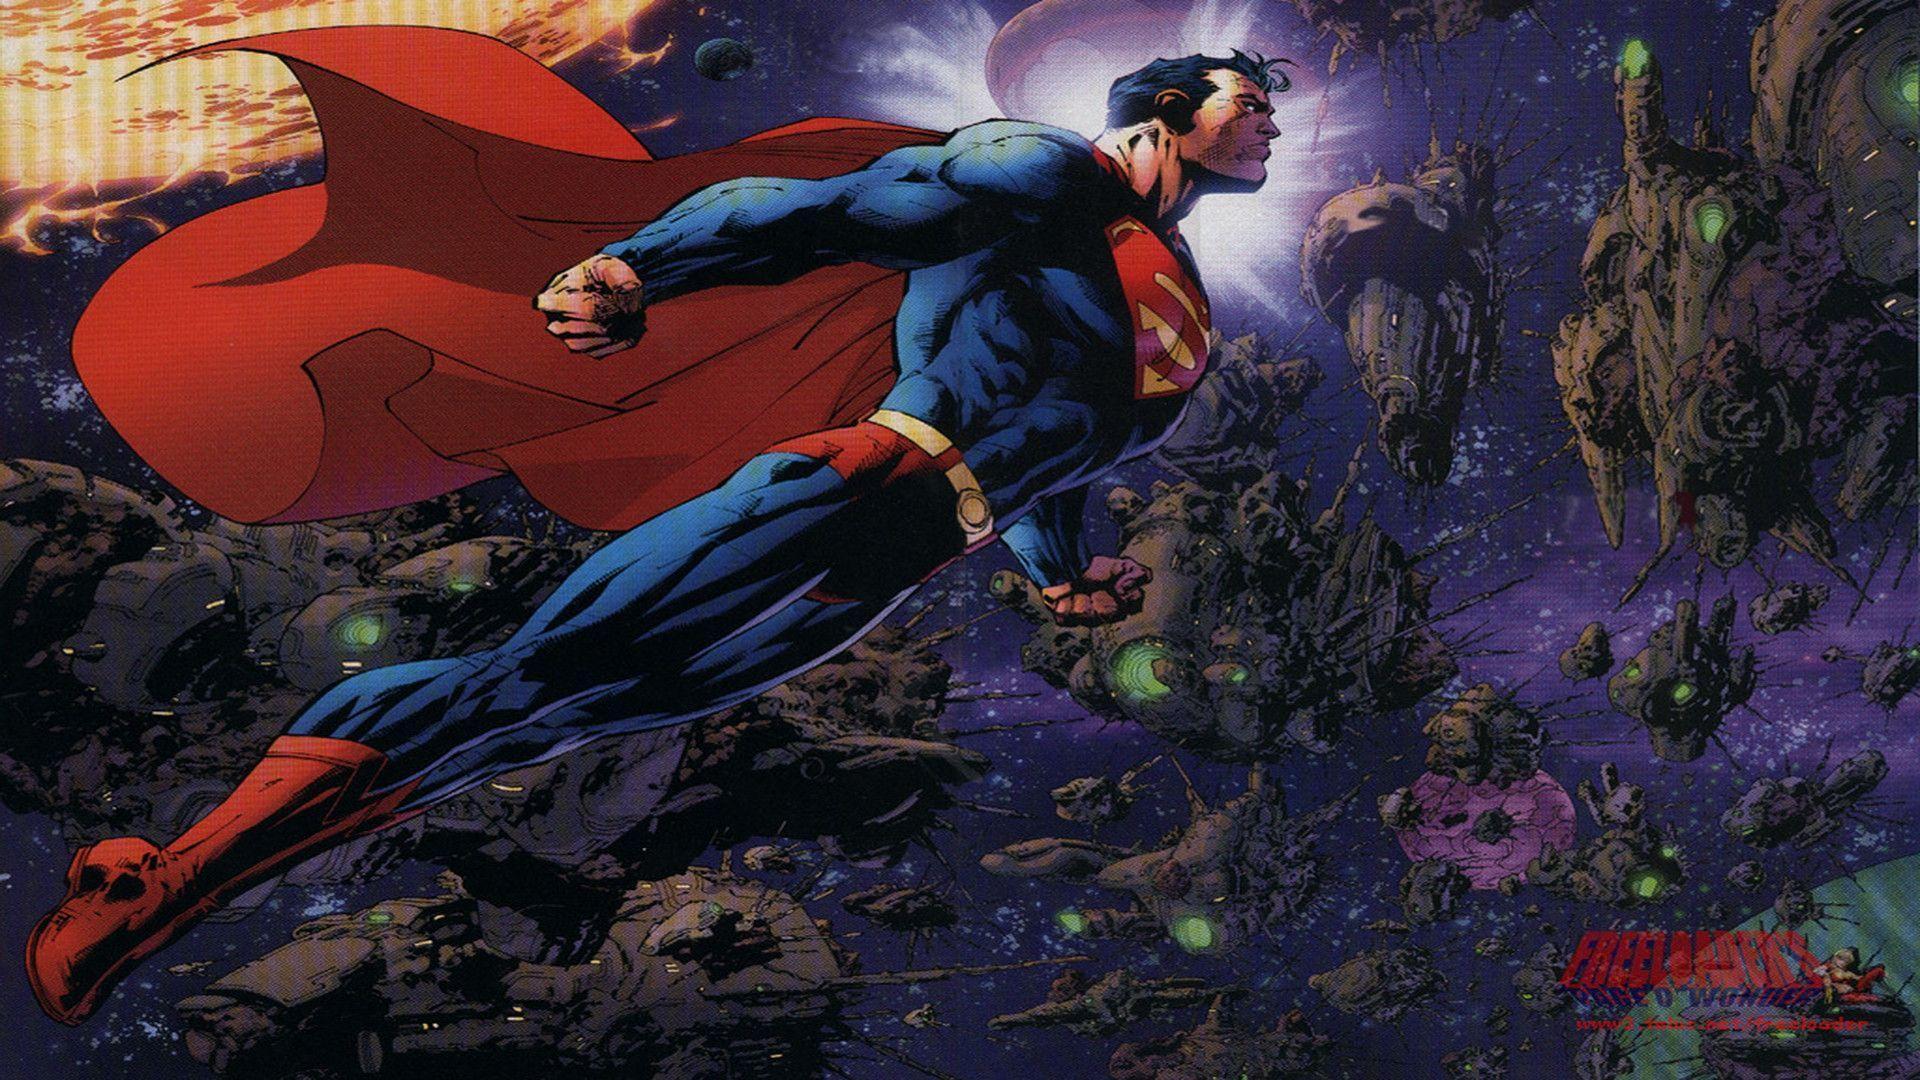 DC Comics Wallpaper, Superman Dc Comics 3975888 1024 768